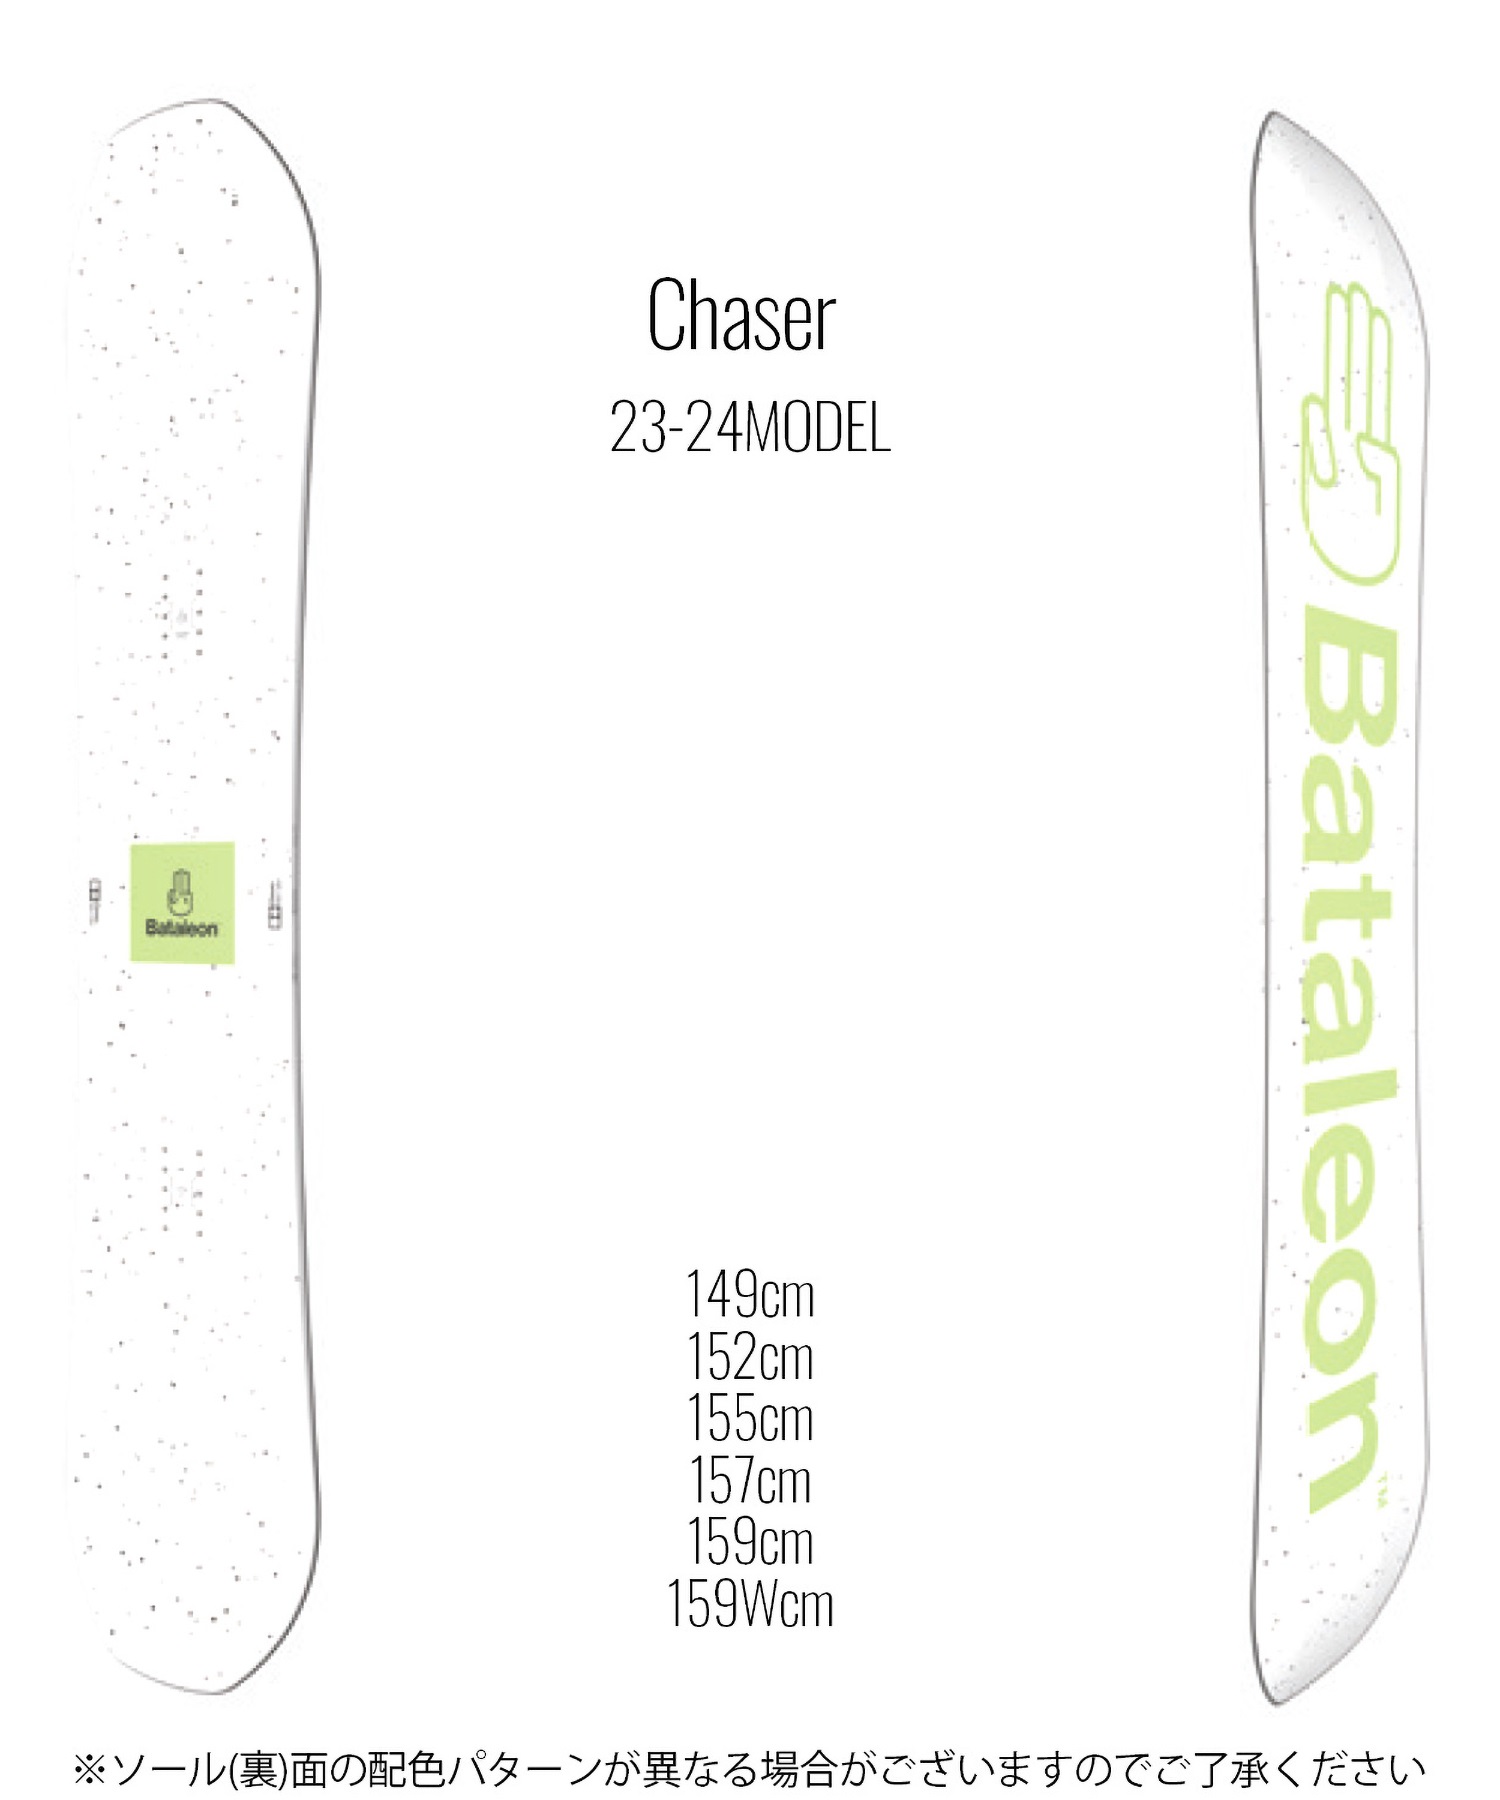 【早期購入/店頭受取対象外】スノーボード 板 メンズ BATALEON バタレオン Chaser 23-24モデル ムラサキスポーツ KK C10(Chaser-149cm)